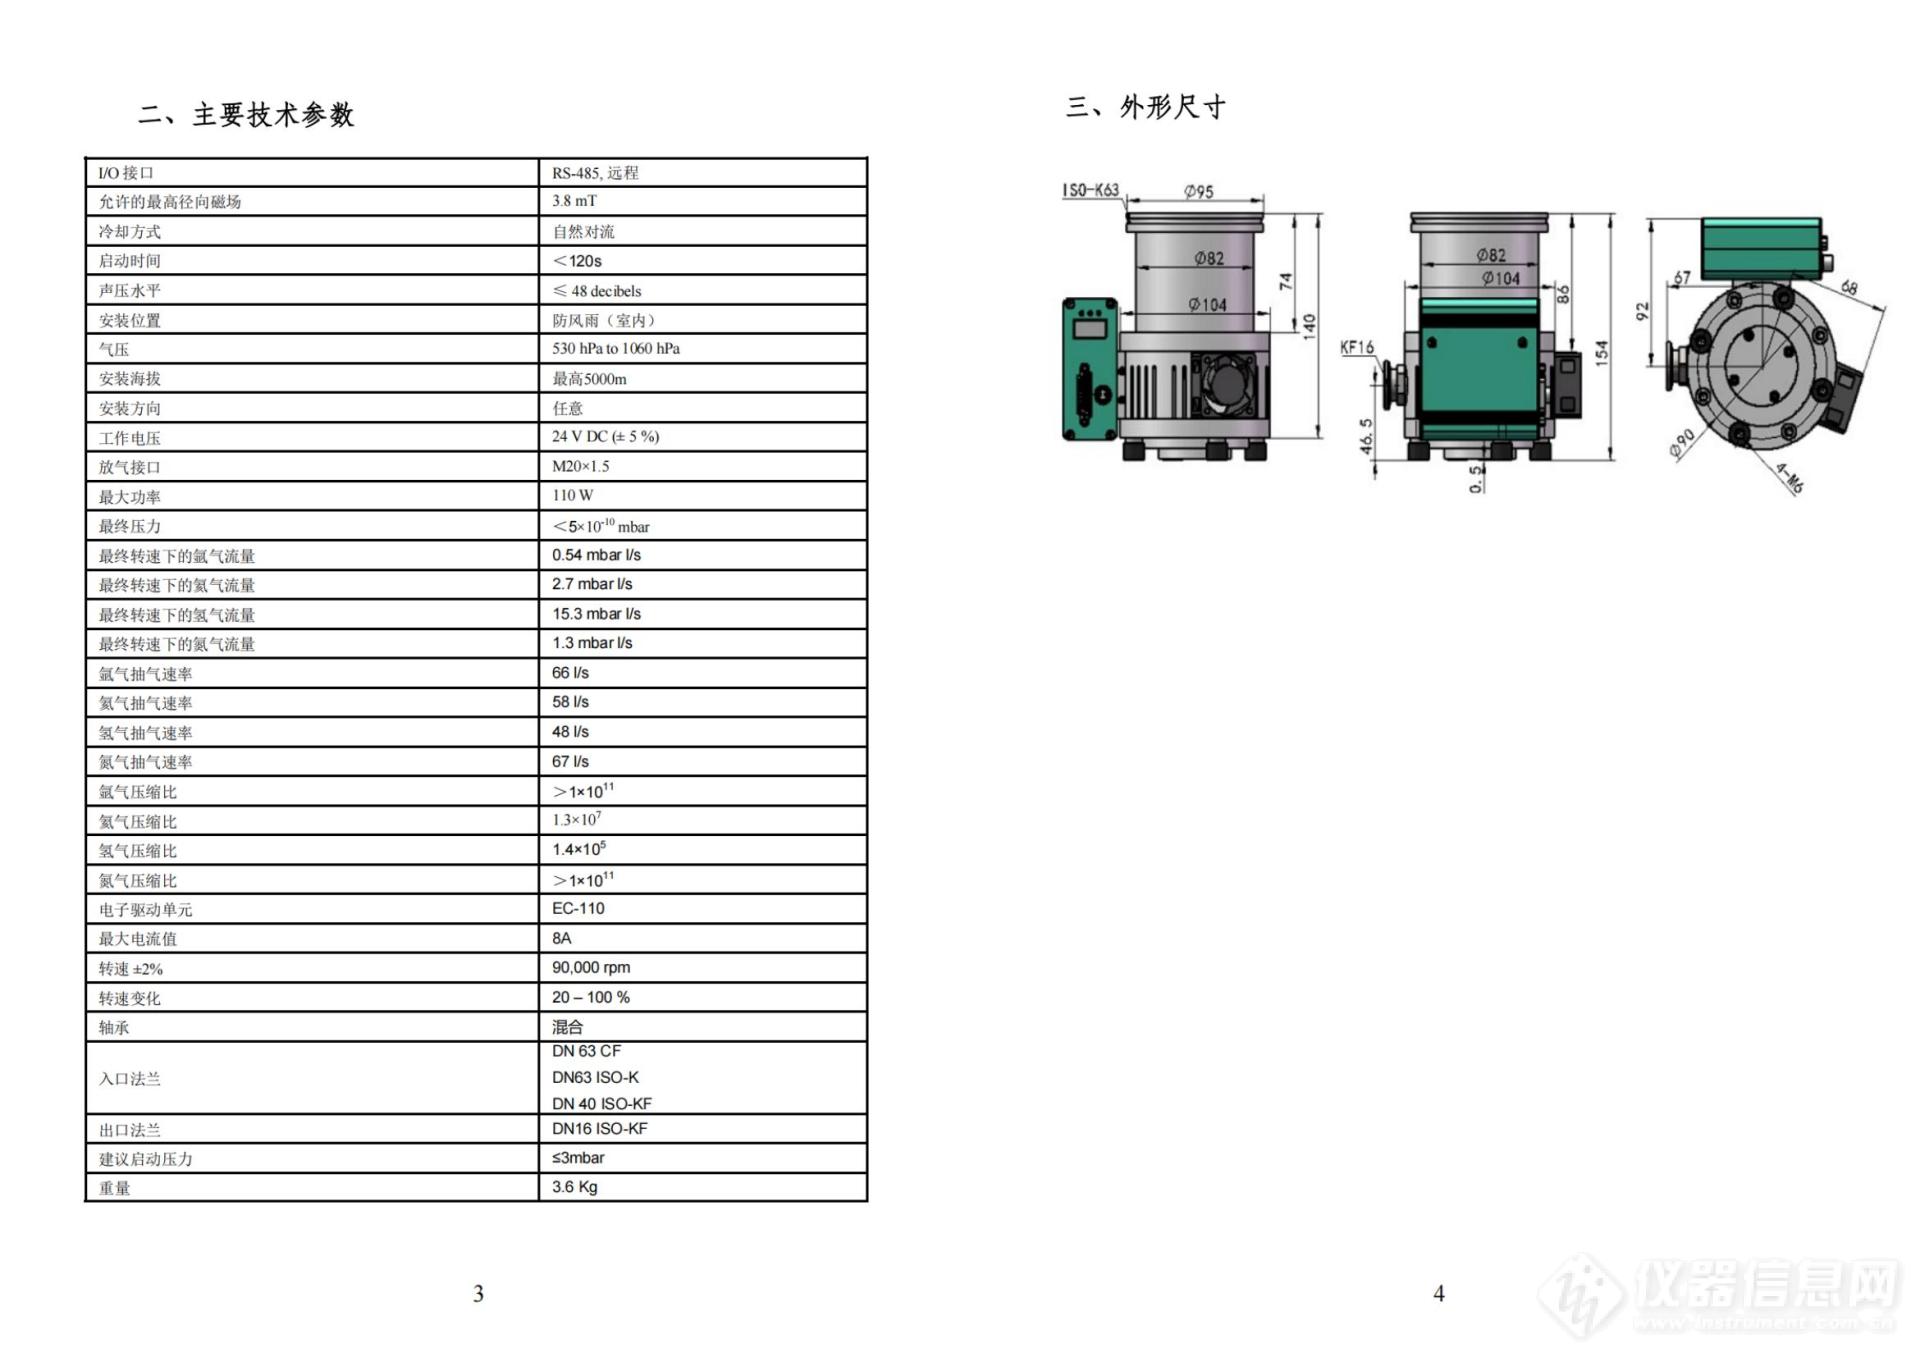 15、TMP-80 涡轮分子泵 产品说明书 小册子版本 20231125_纯图版_04(1).jpg